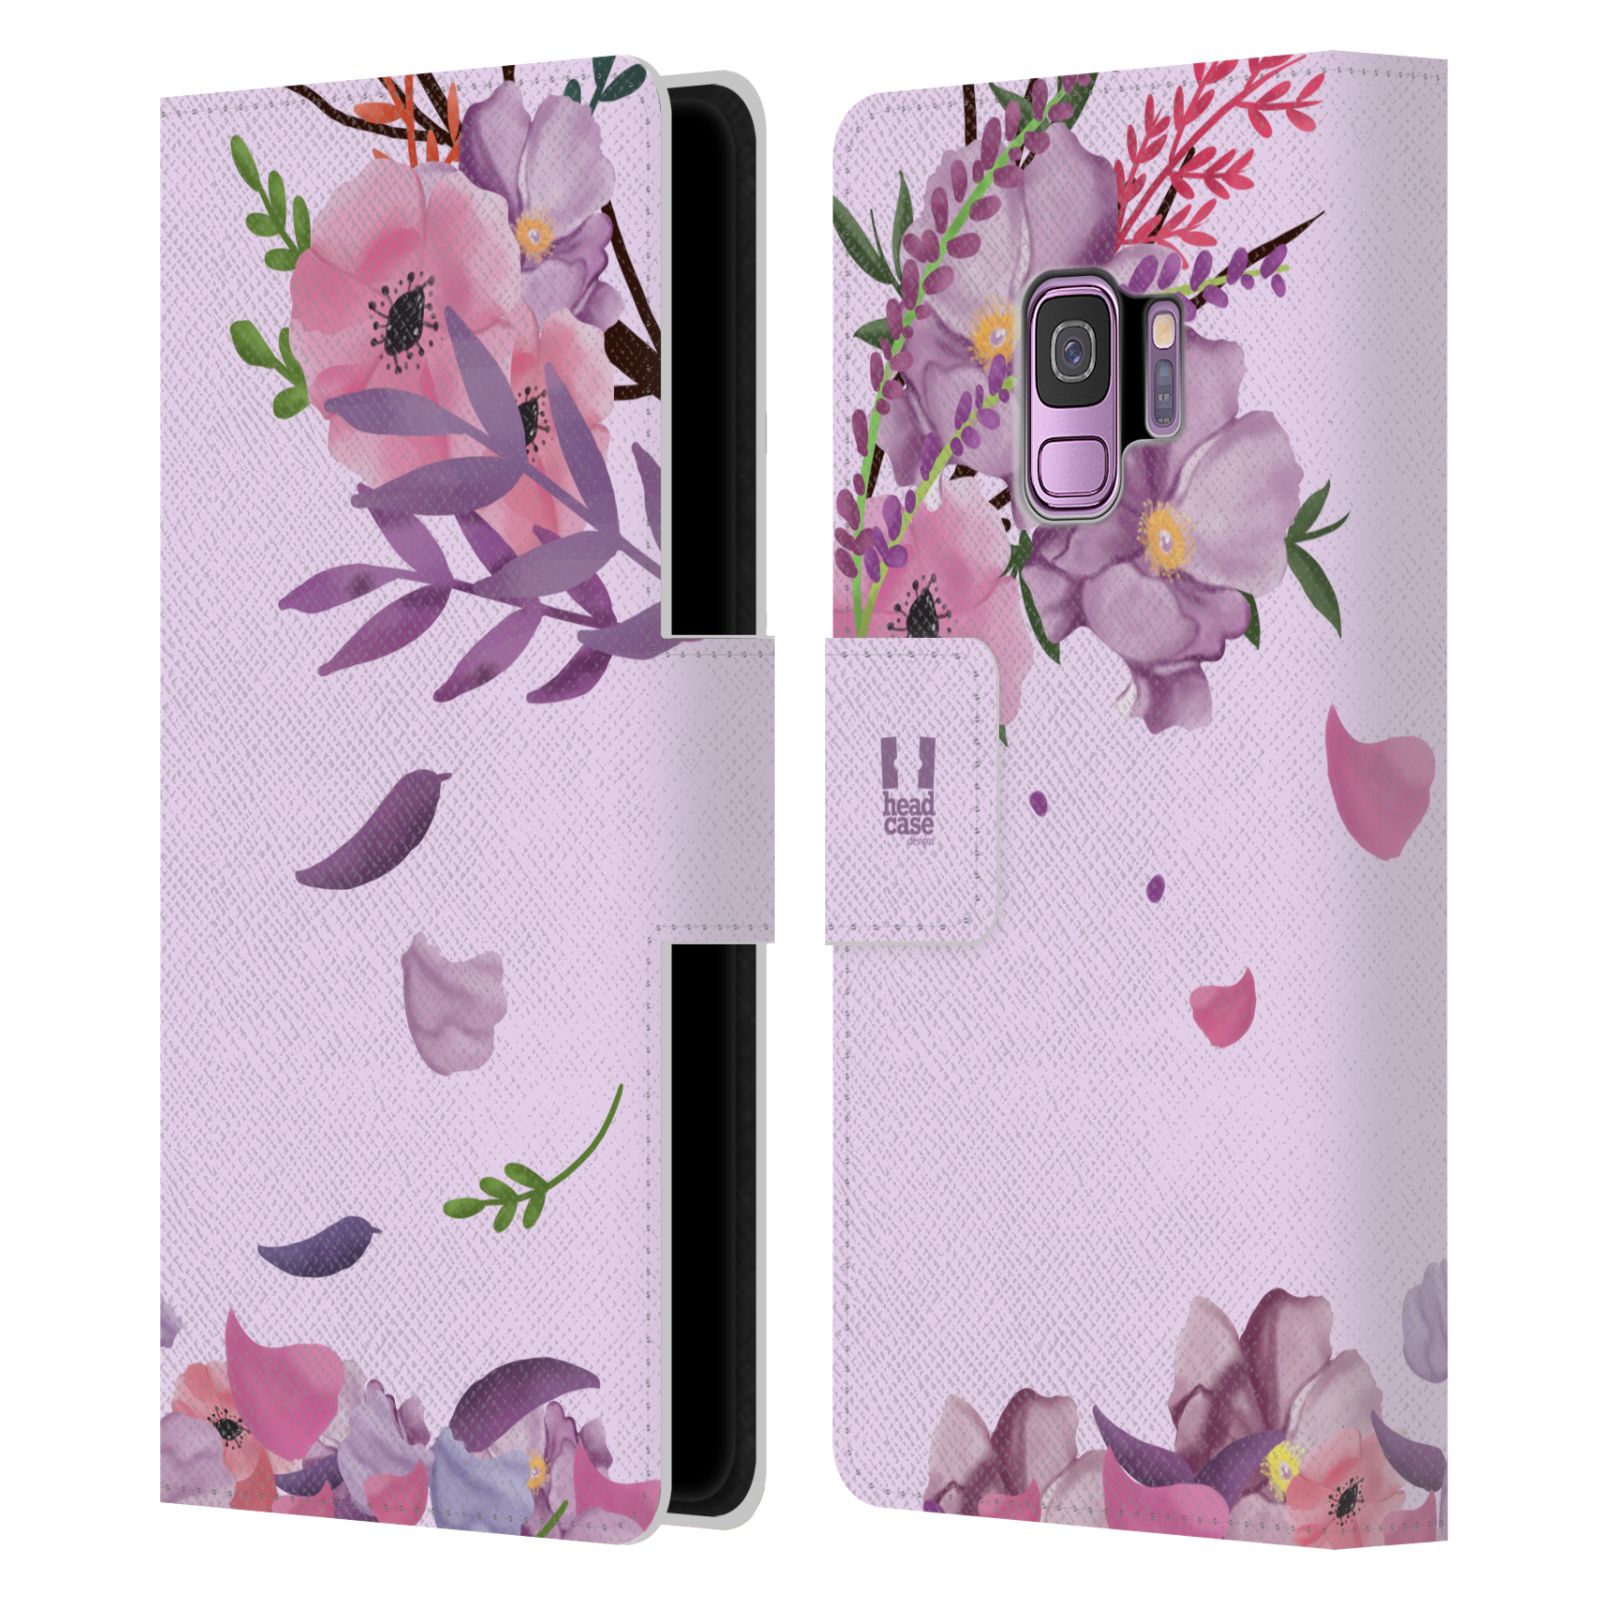 Pouzdro na mobil Samsung Galaxy S9 - HEAD CASE - Rozkvetlé růže a listy růžová